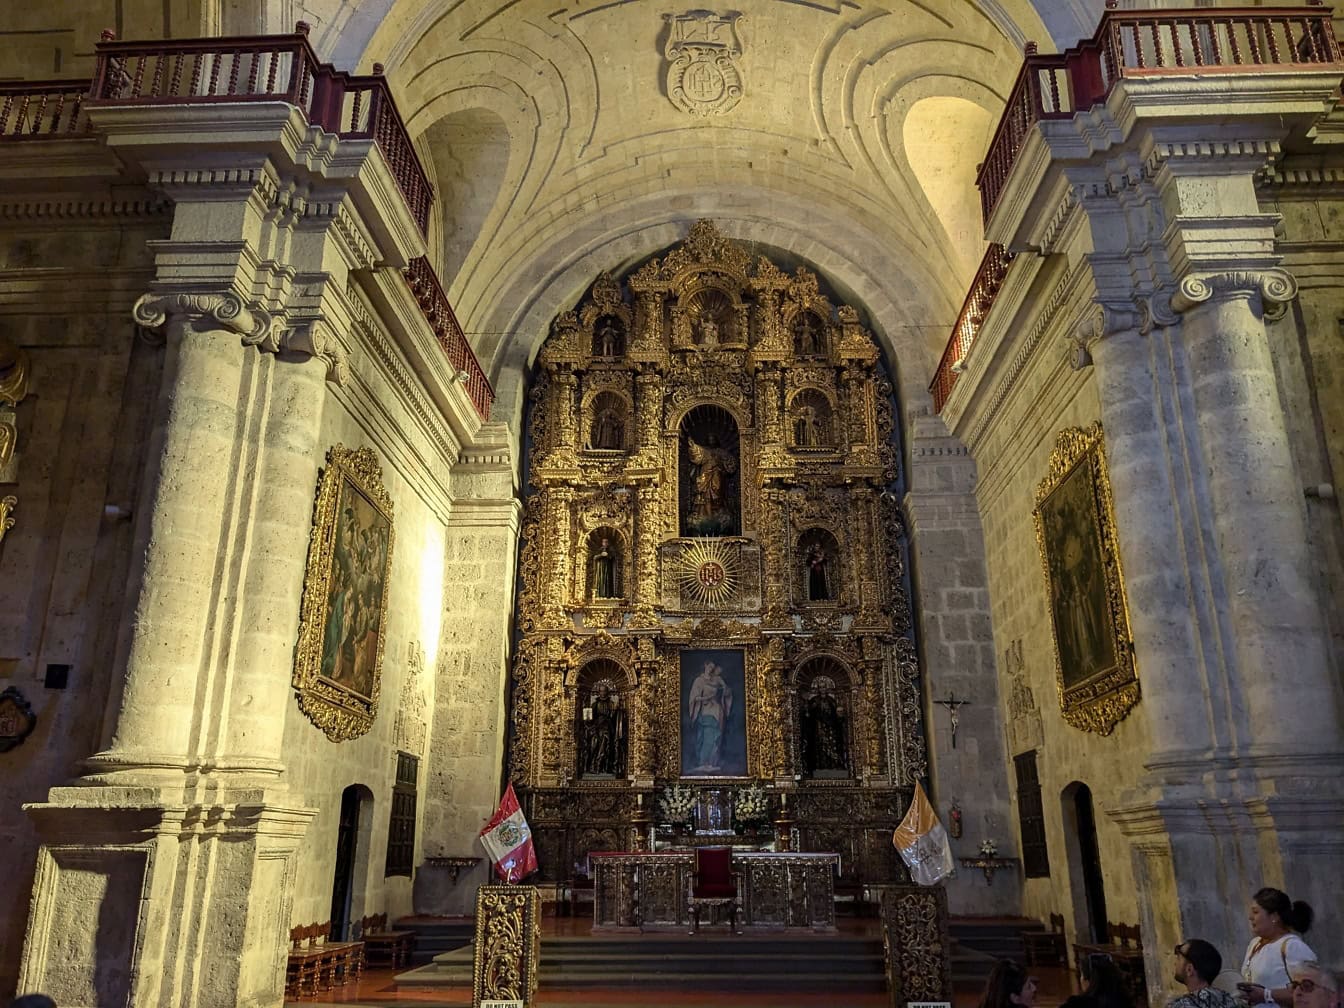 Grande altar ornamentado com ícones na igreja da Companhia de Jesus de Arequipa no Peru, América Latina